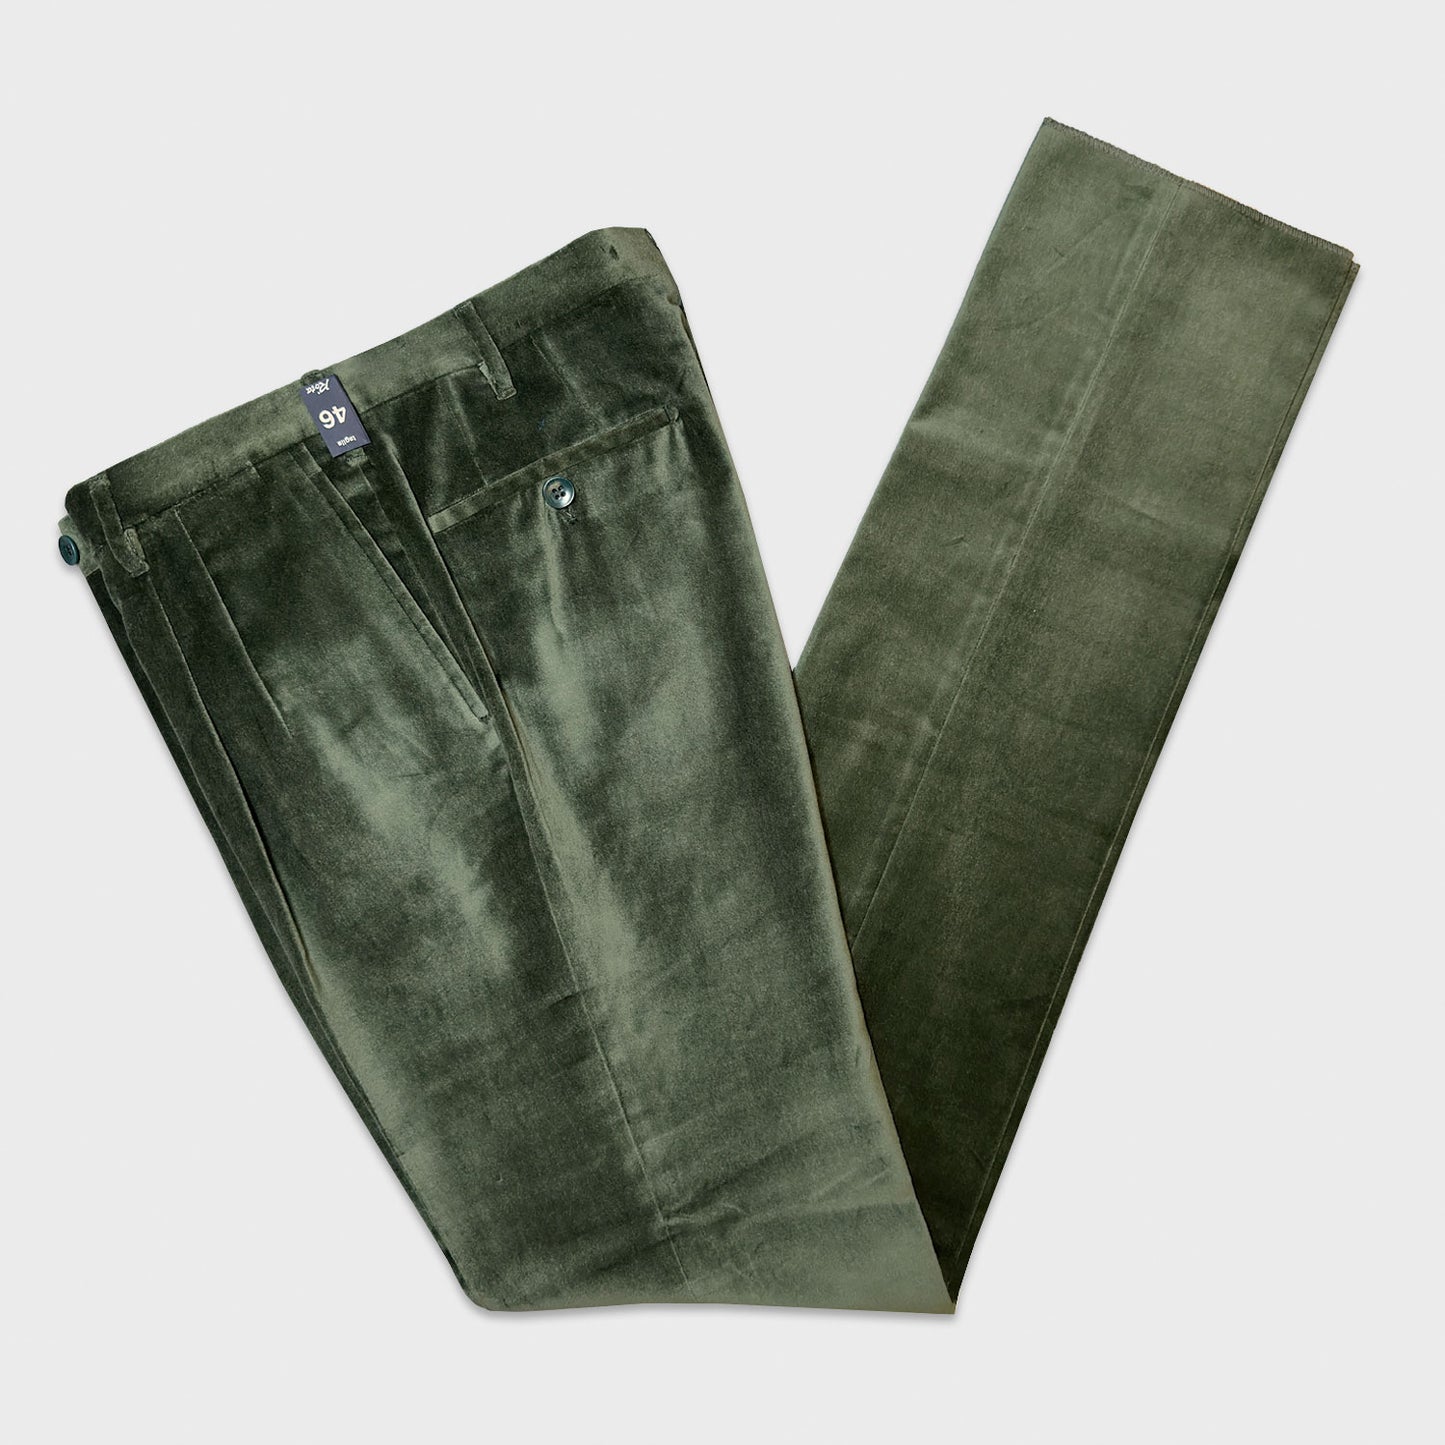 Pine Green Velvet Cotton Tailoring Pants Rota Pantaloni